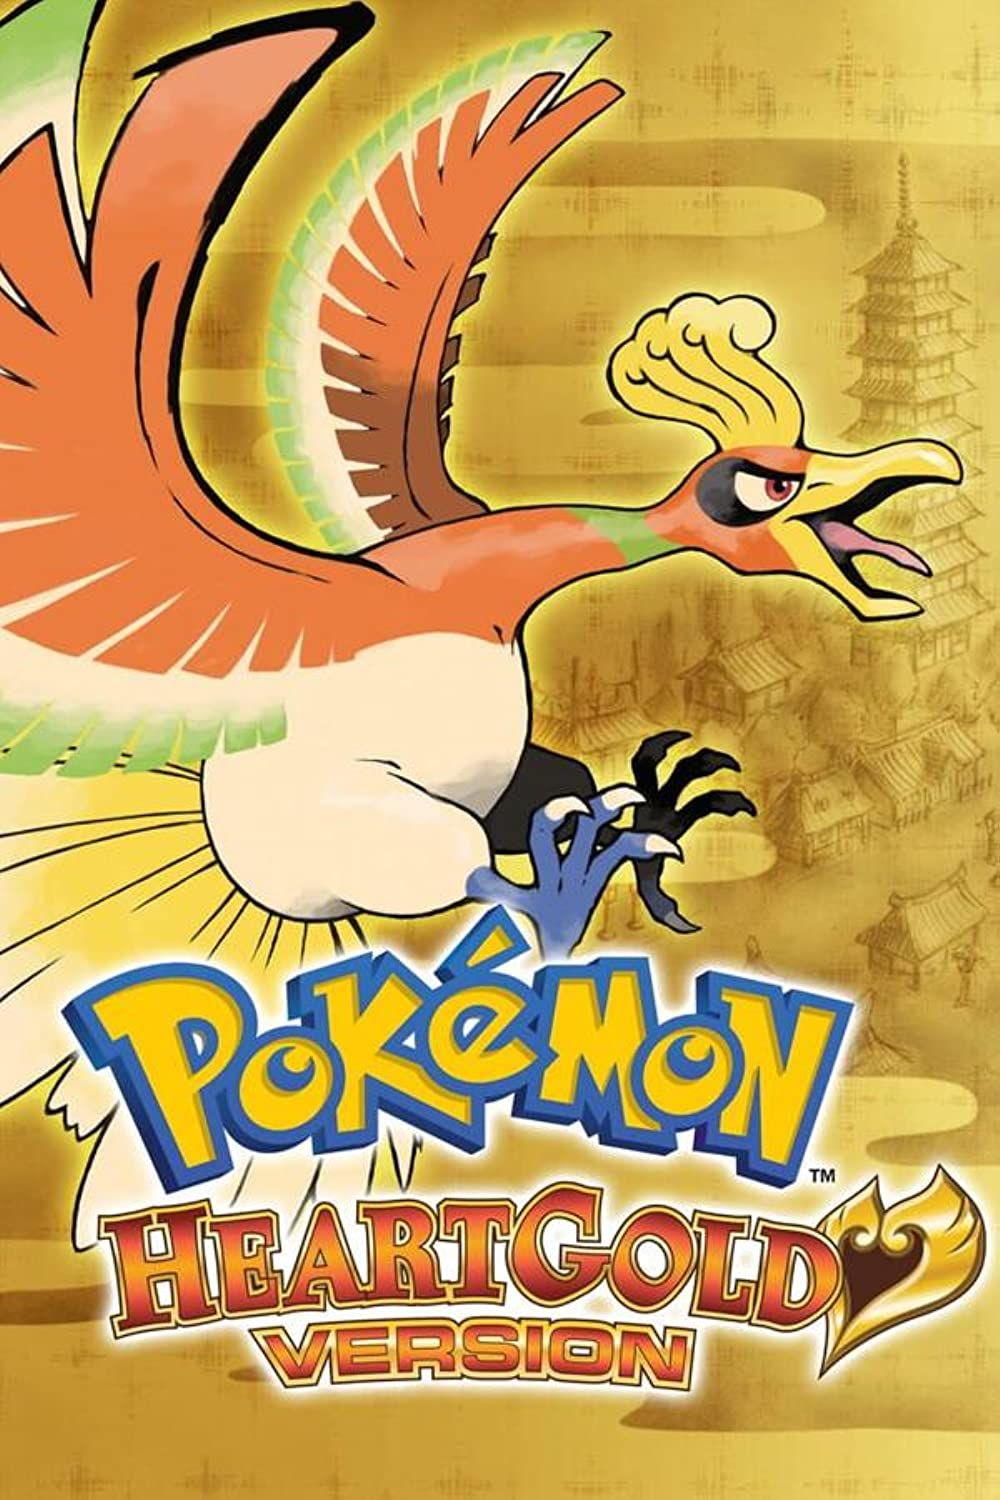 Pokémon HeartGold Pokédex Expansion: Gen V Trailer 